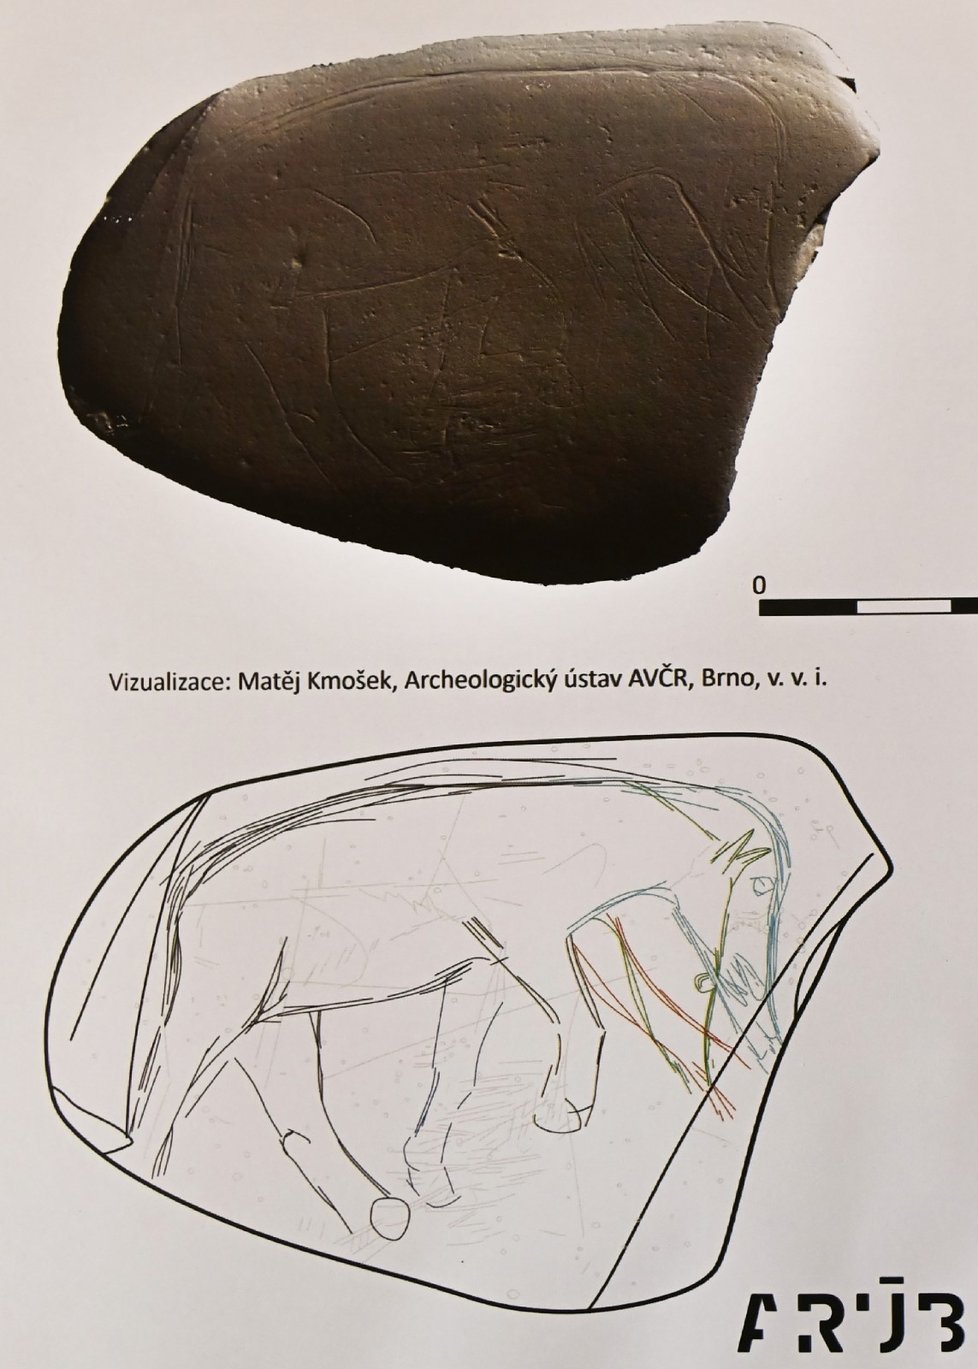 Odborníci z Moravského zemského muzea v Brně představili unikátní předmět ze starší doby kamenné. Říční valoun s rytinami mamuta a hlavy koně našli na Hladovém vrchu v Ostravě.